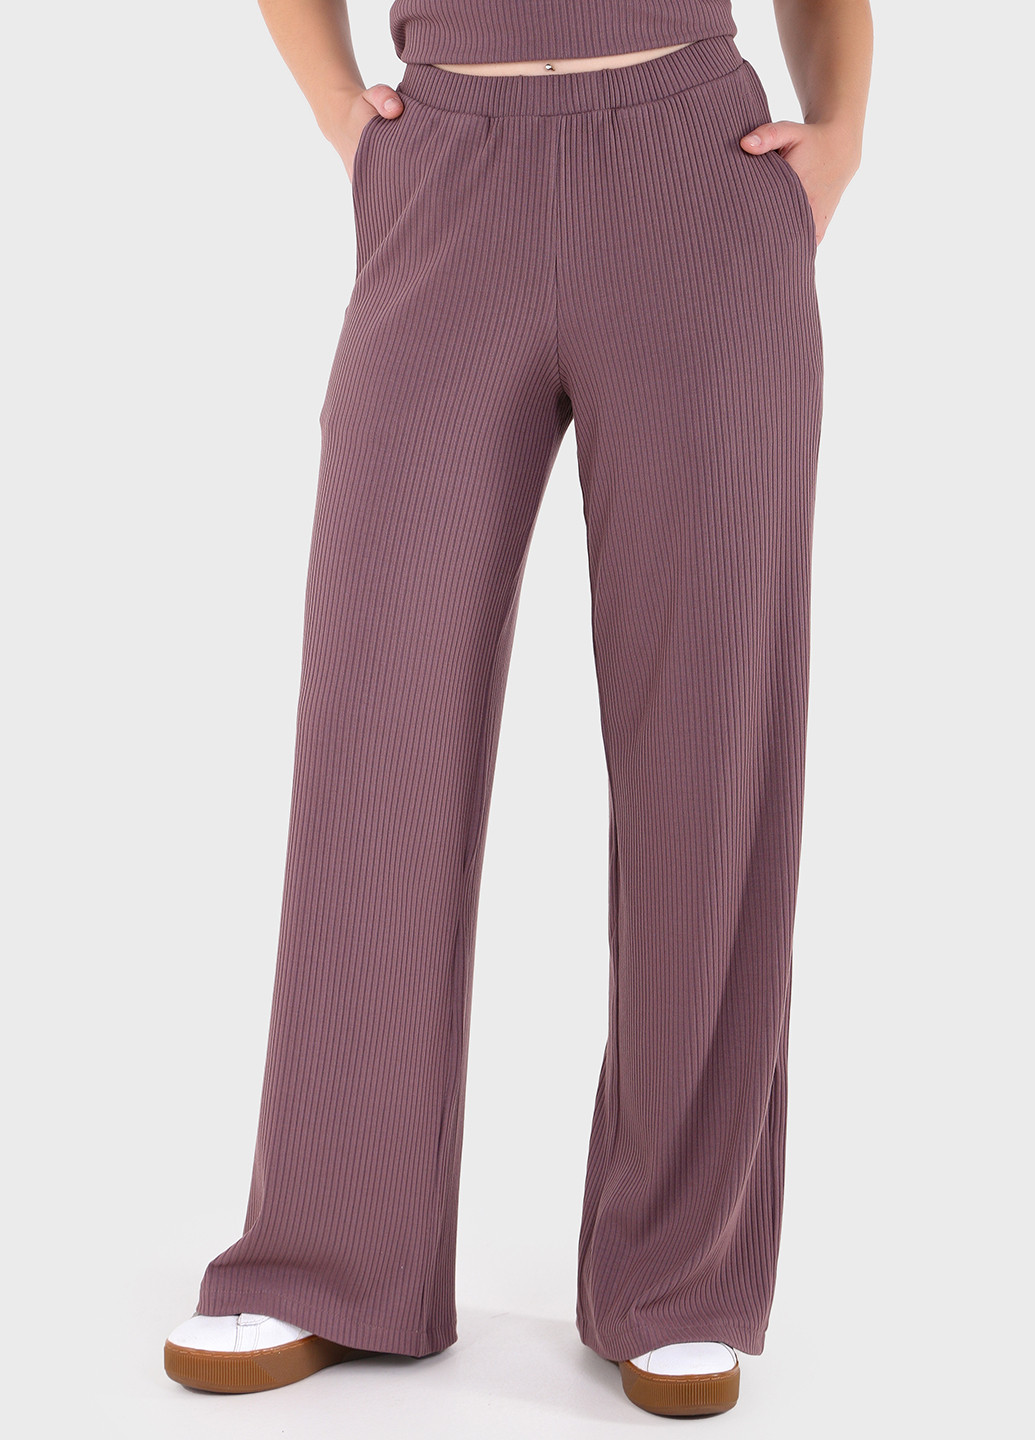 Женские брюки клеш в рубчик фиолетового цвета 600000070 Merlini амаранти (257533392)